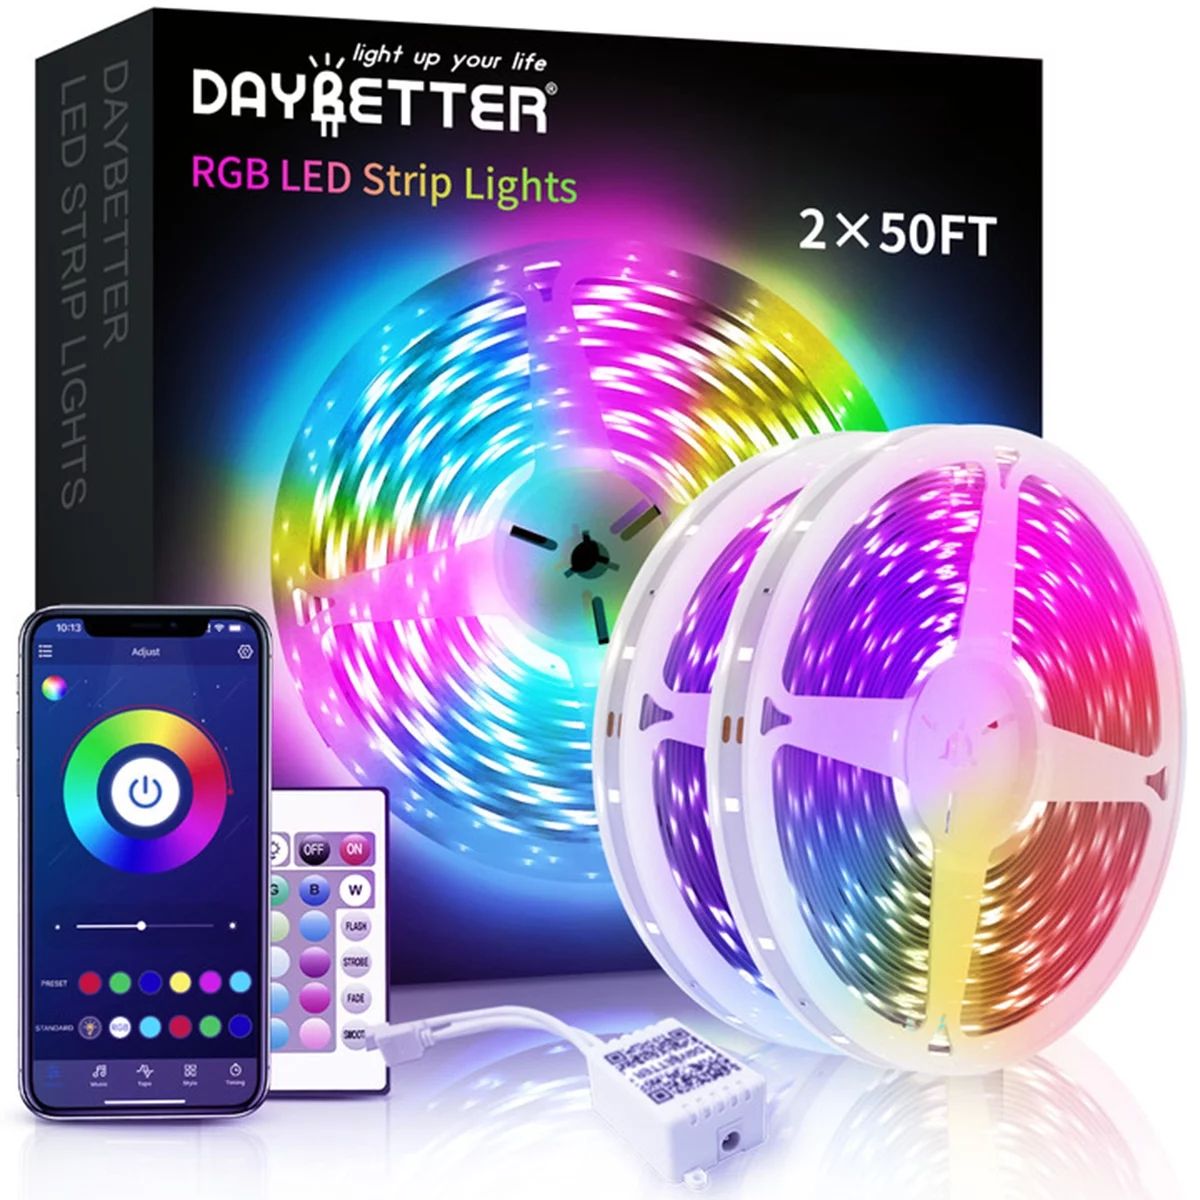 DAYBETTER Led Strip Lights, 100ft Light Strips with App Control Remote, 12V 5050 RGB Led Lights f... | Walmart (US)